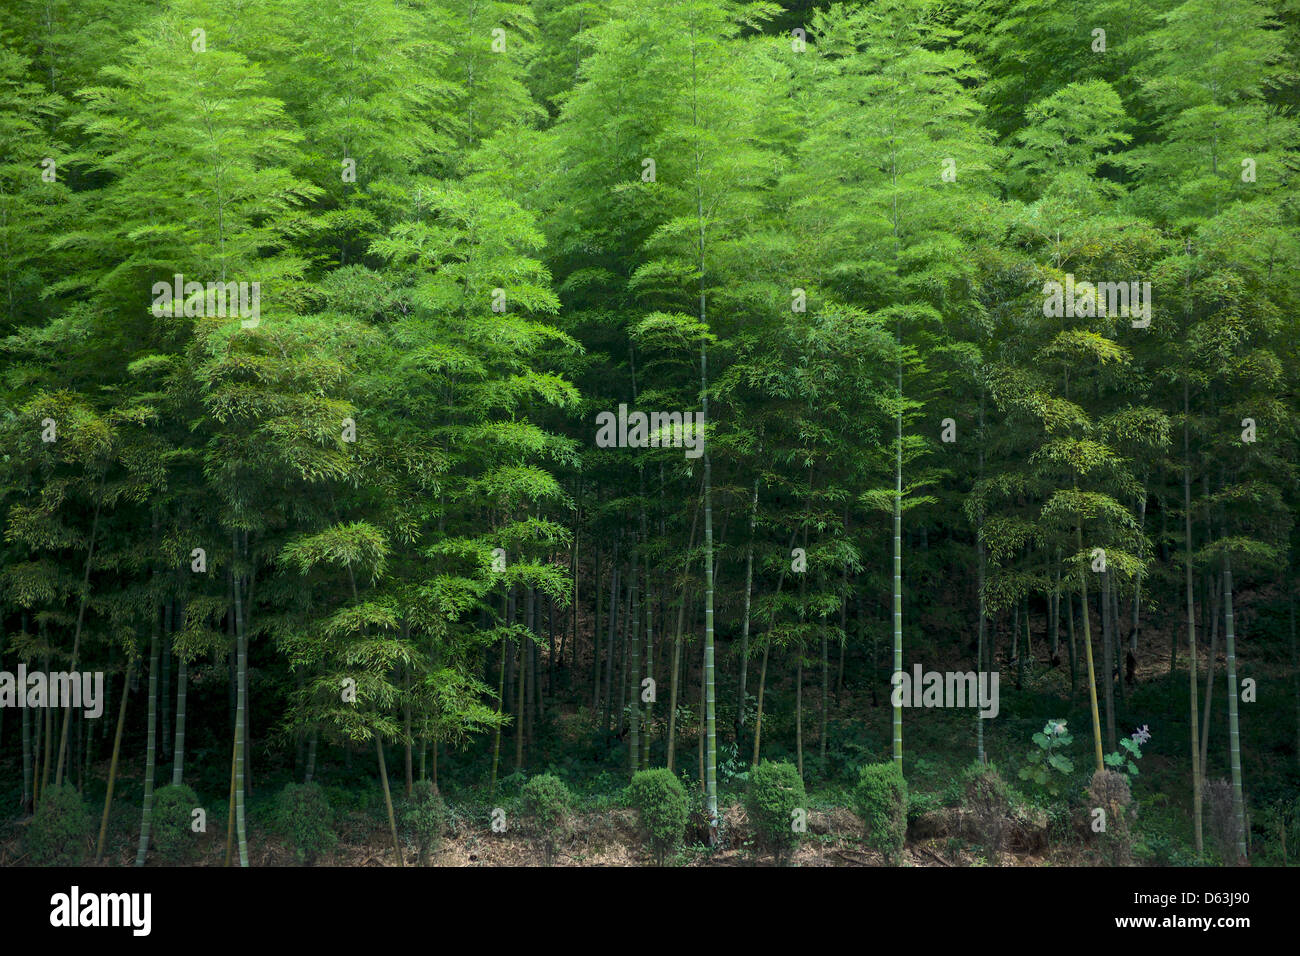 Forêt de bambou à Anji. Anji county est bien connu pour ses bambous, contenant 60 000 hectares de plantations de bambou Banque D'Images